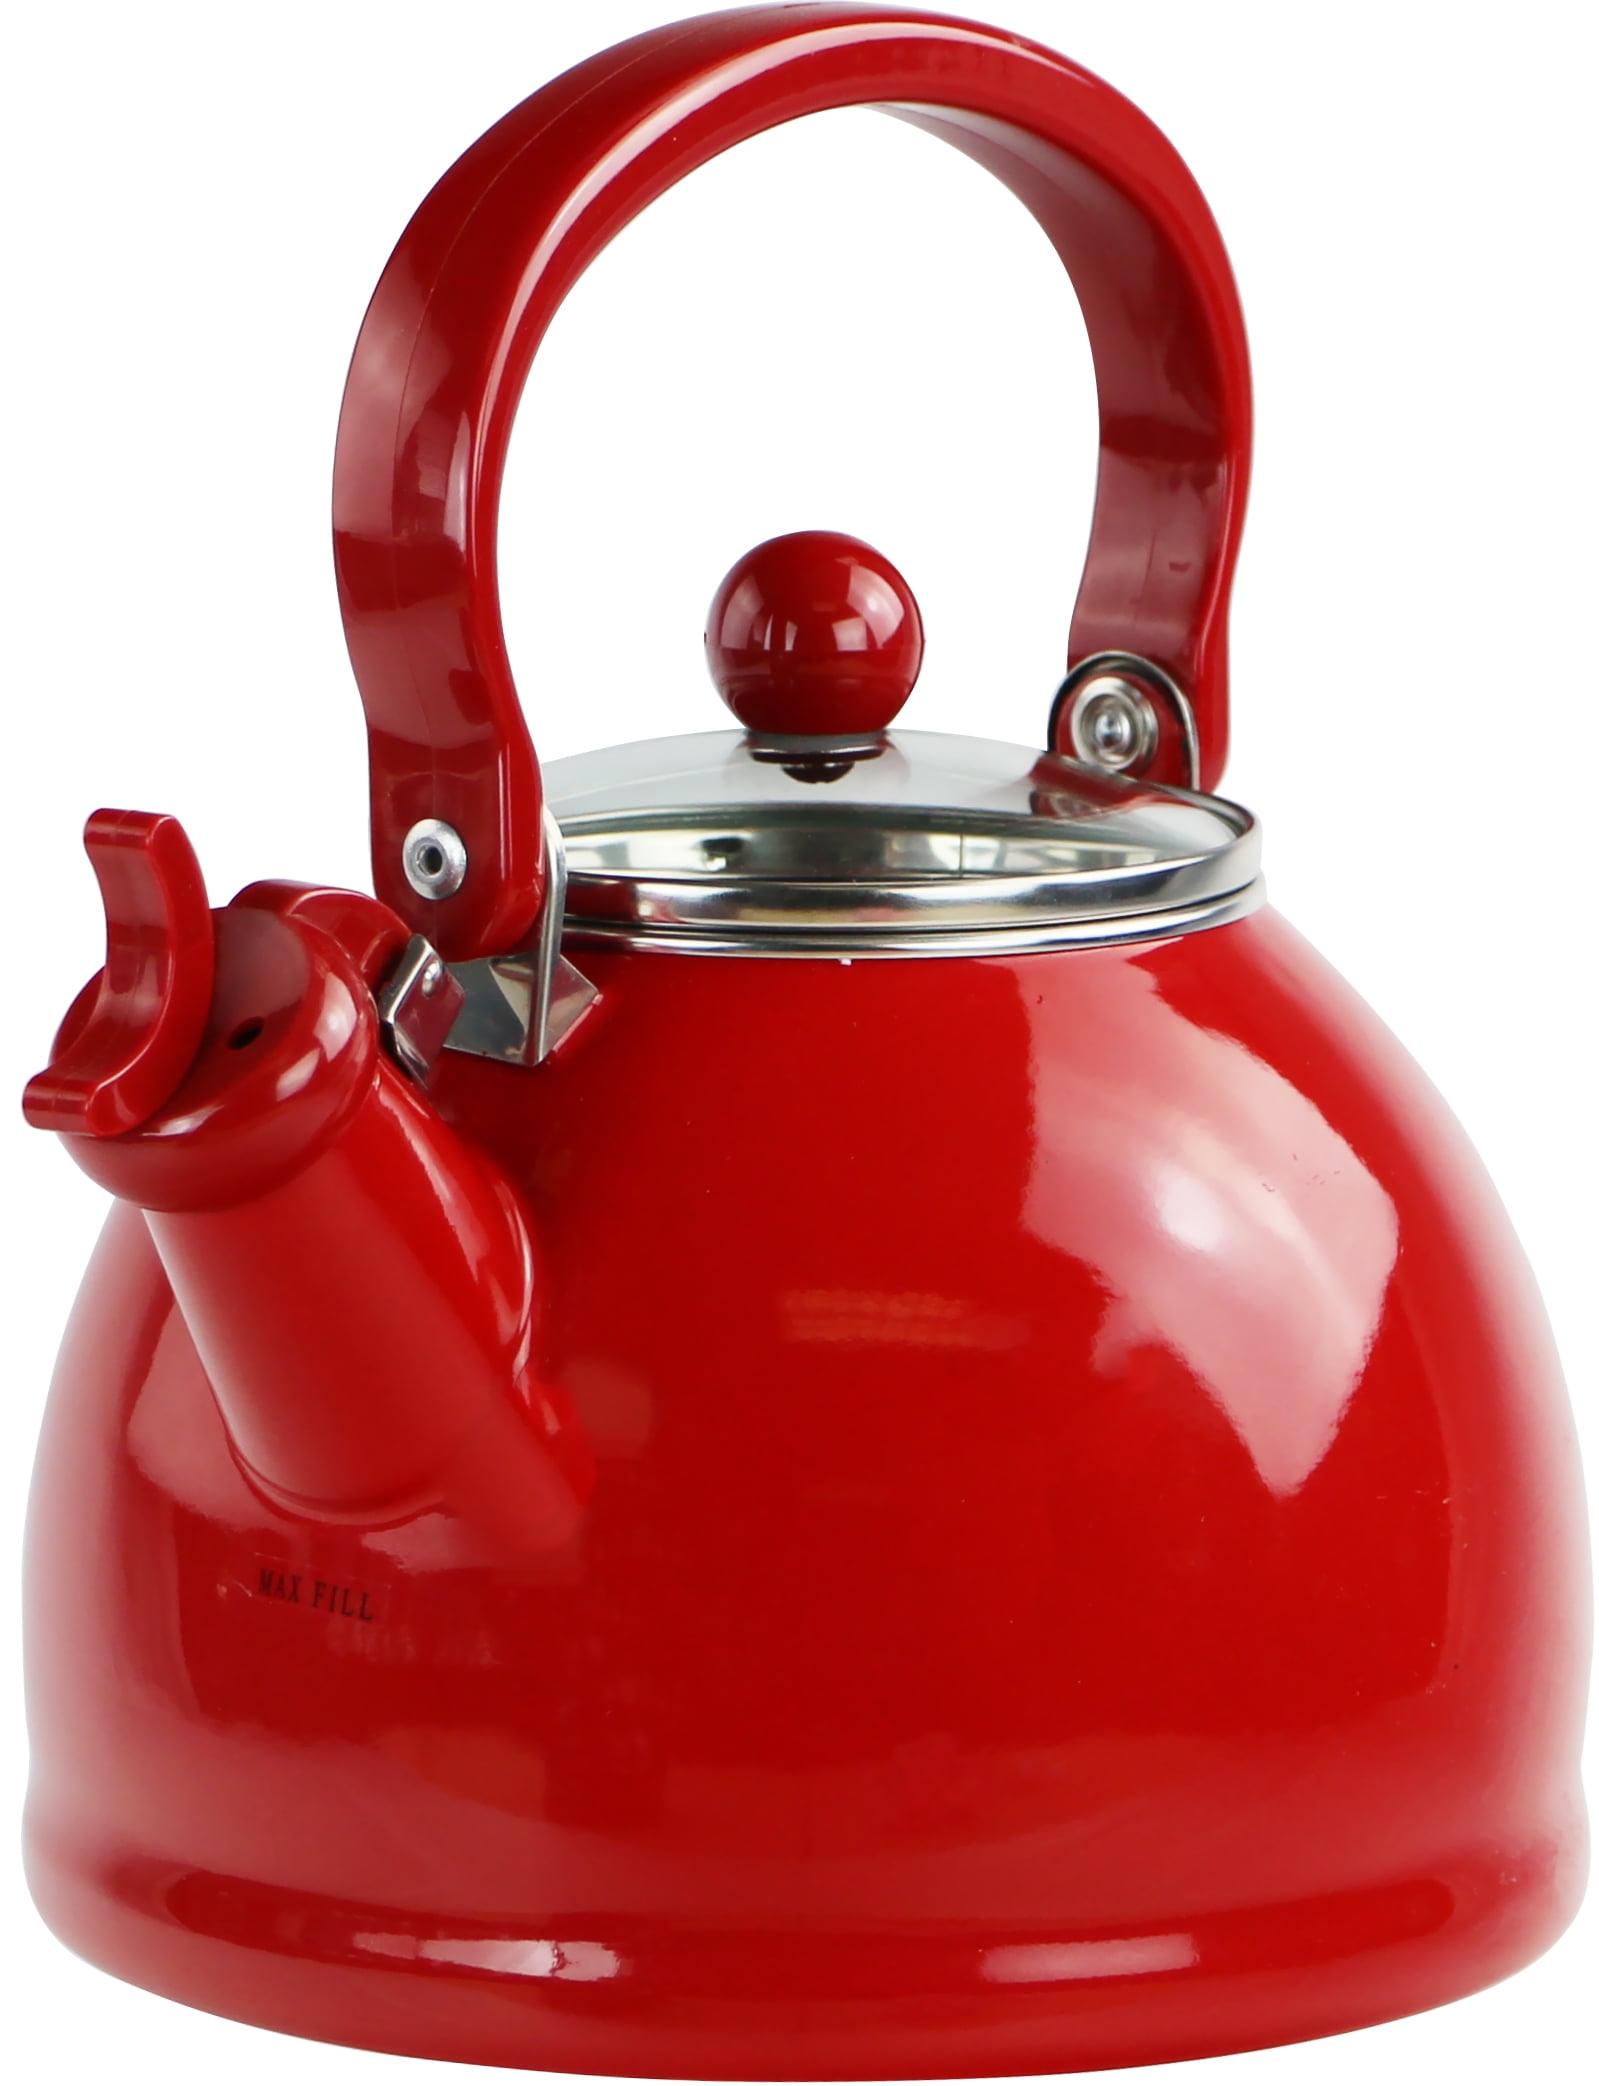 red tea kettle walmart